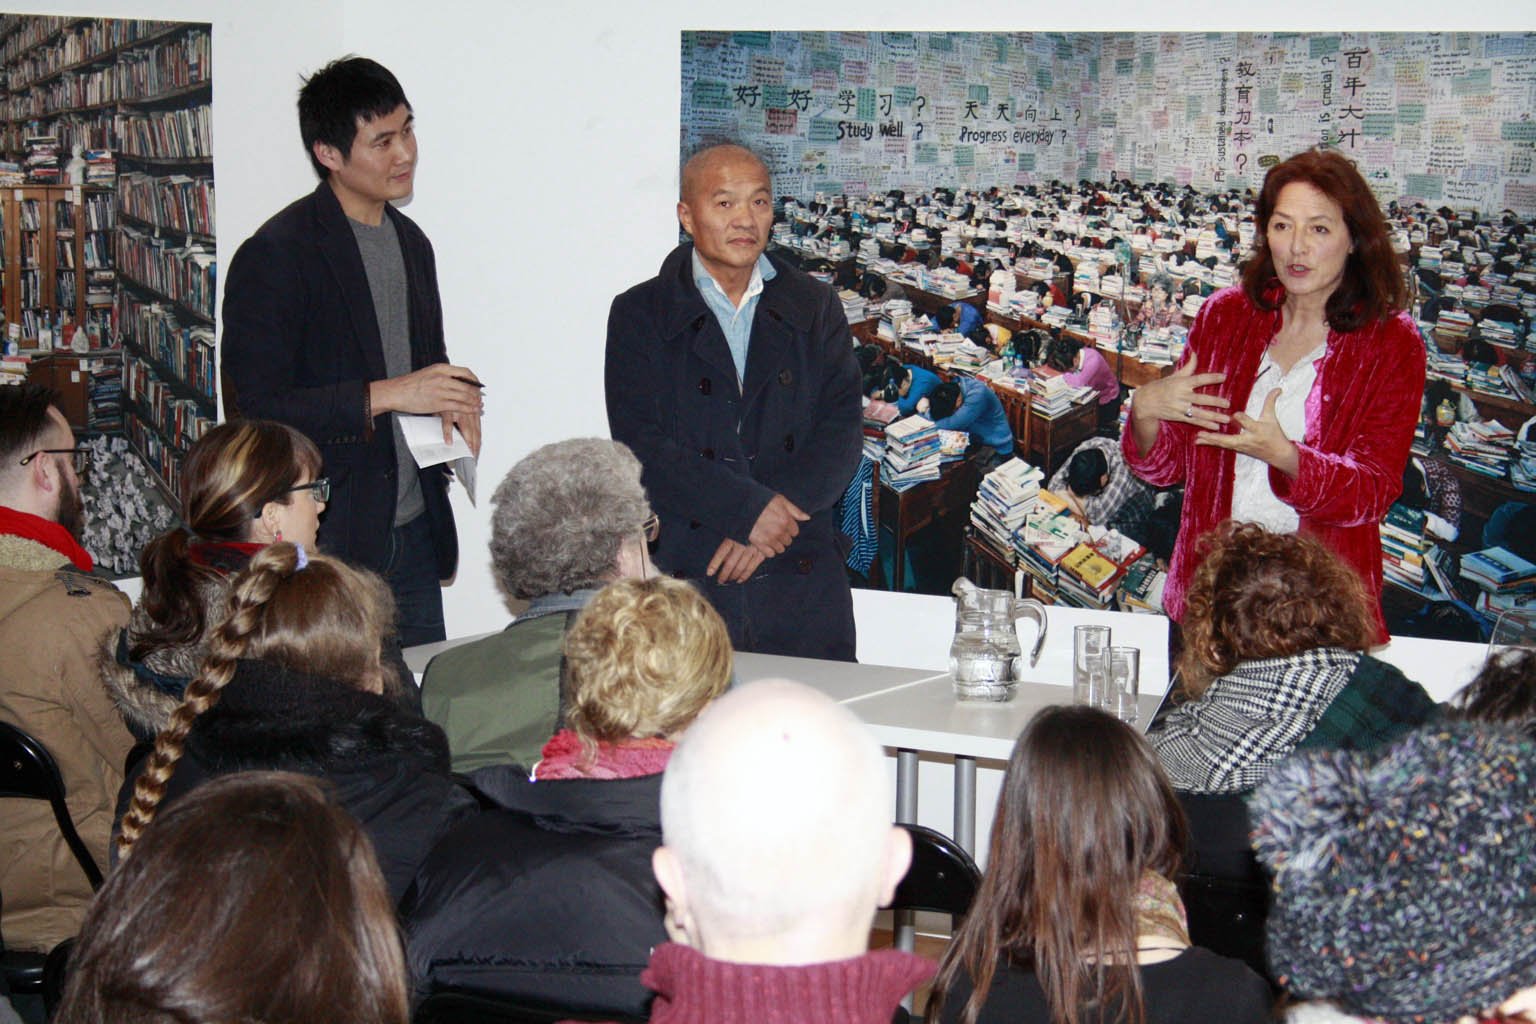  Photographer Wang Qingsong with Curator Tanya Kiang at the exhibition 